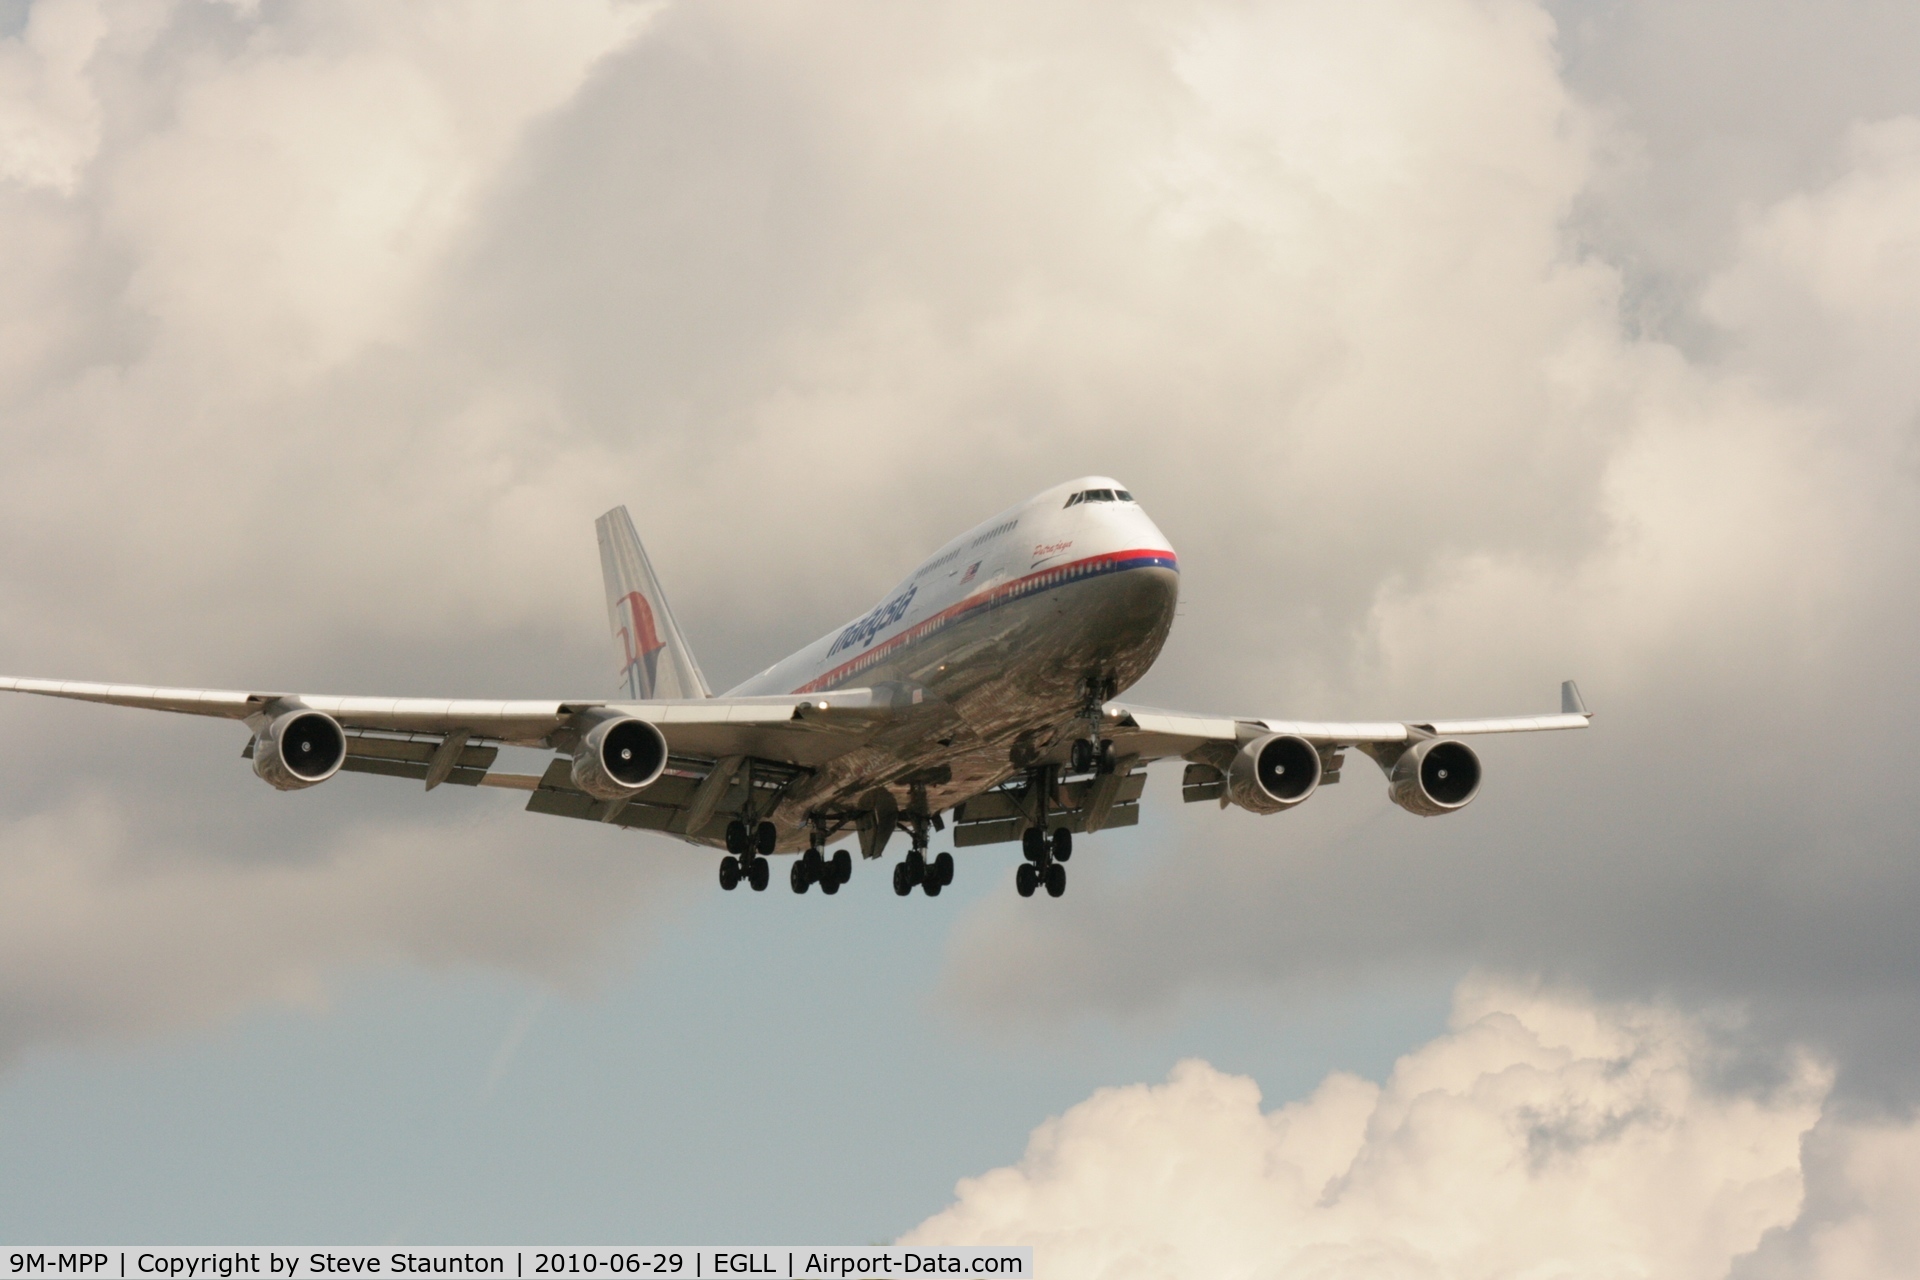 9M-MPP, 2002 Boeing 747-4H6 C/N 29900, Taken at Heathrow Airport, June 2010